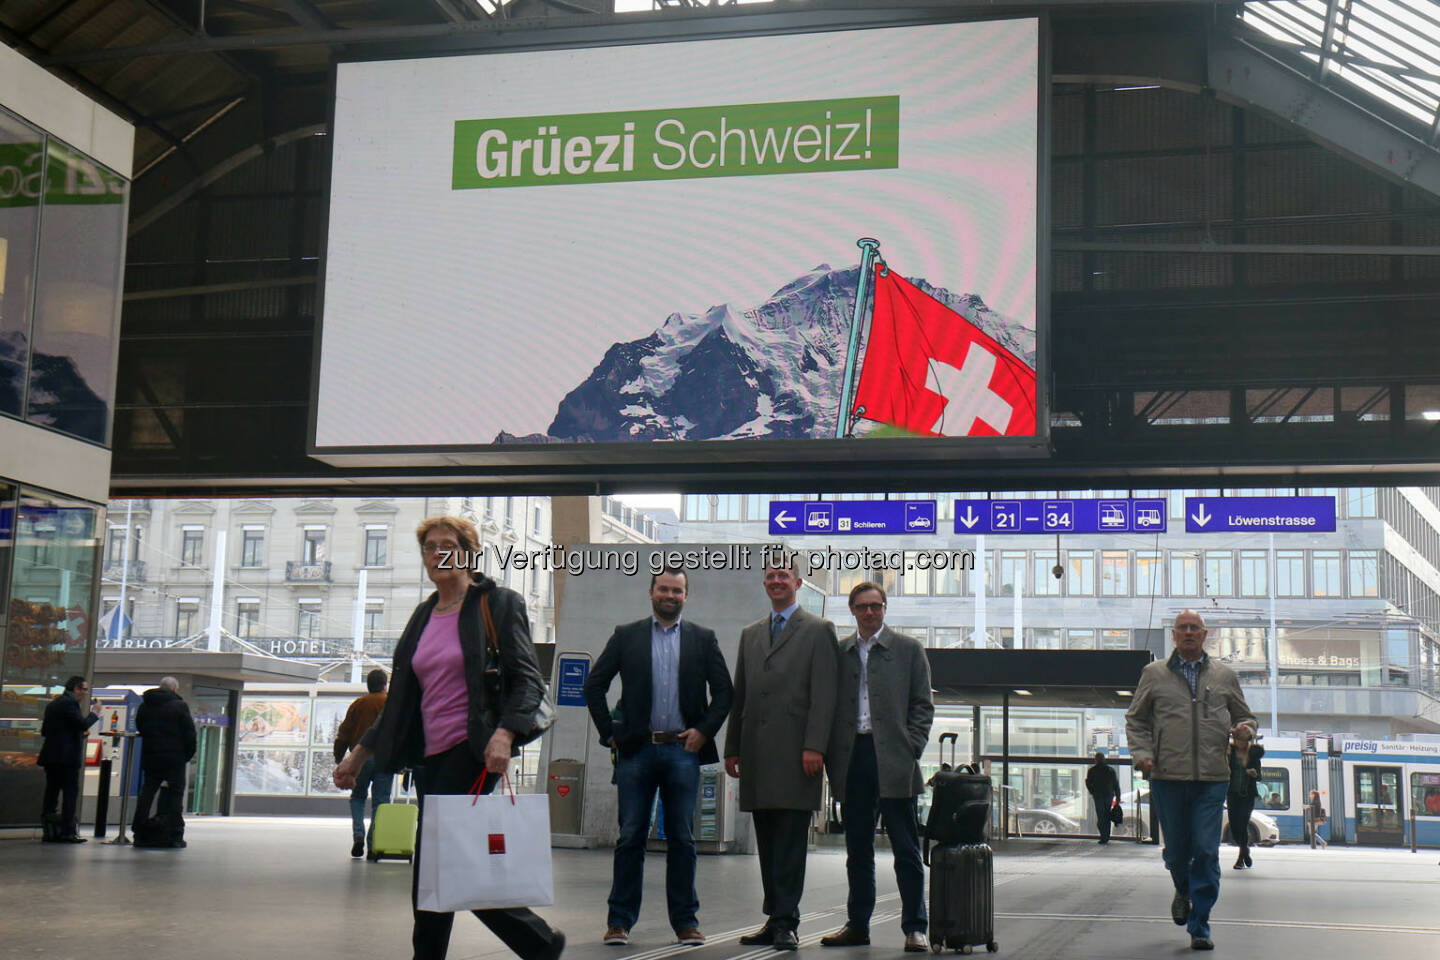 wikifolio - Grüezi Schweiz!